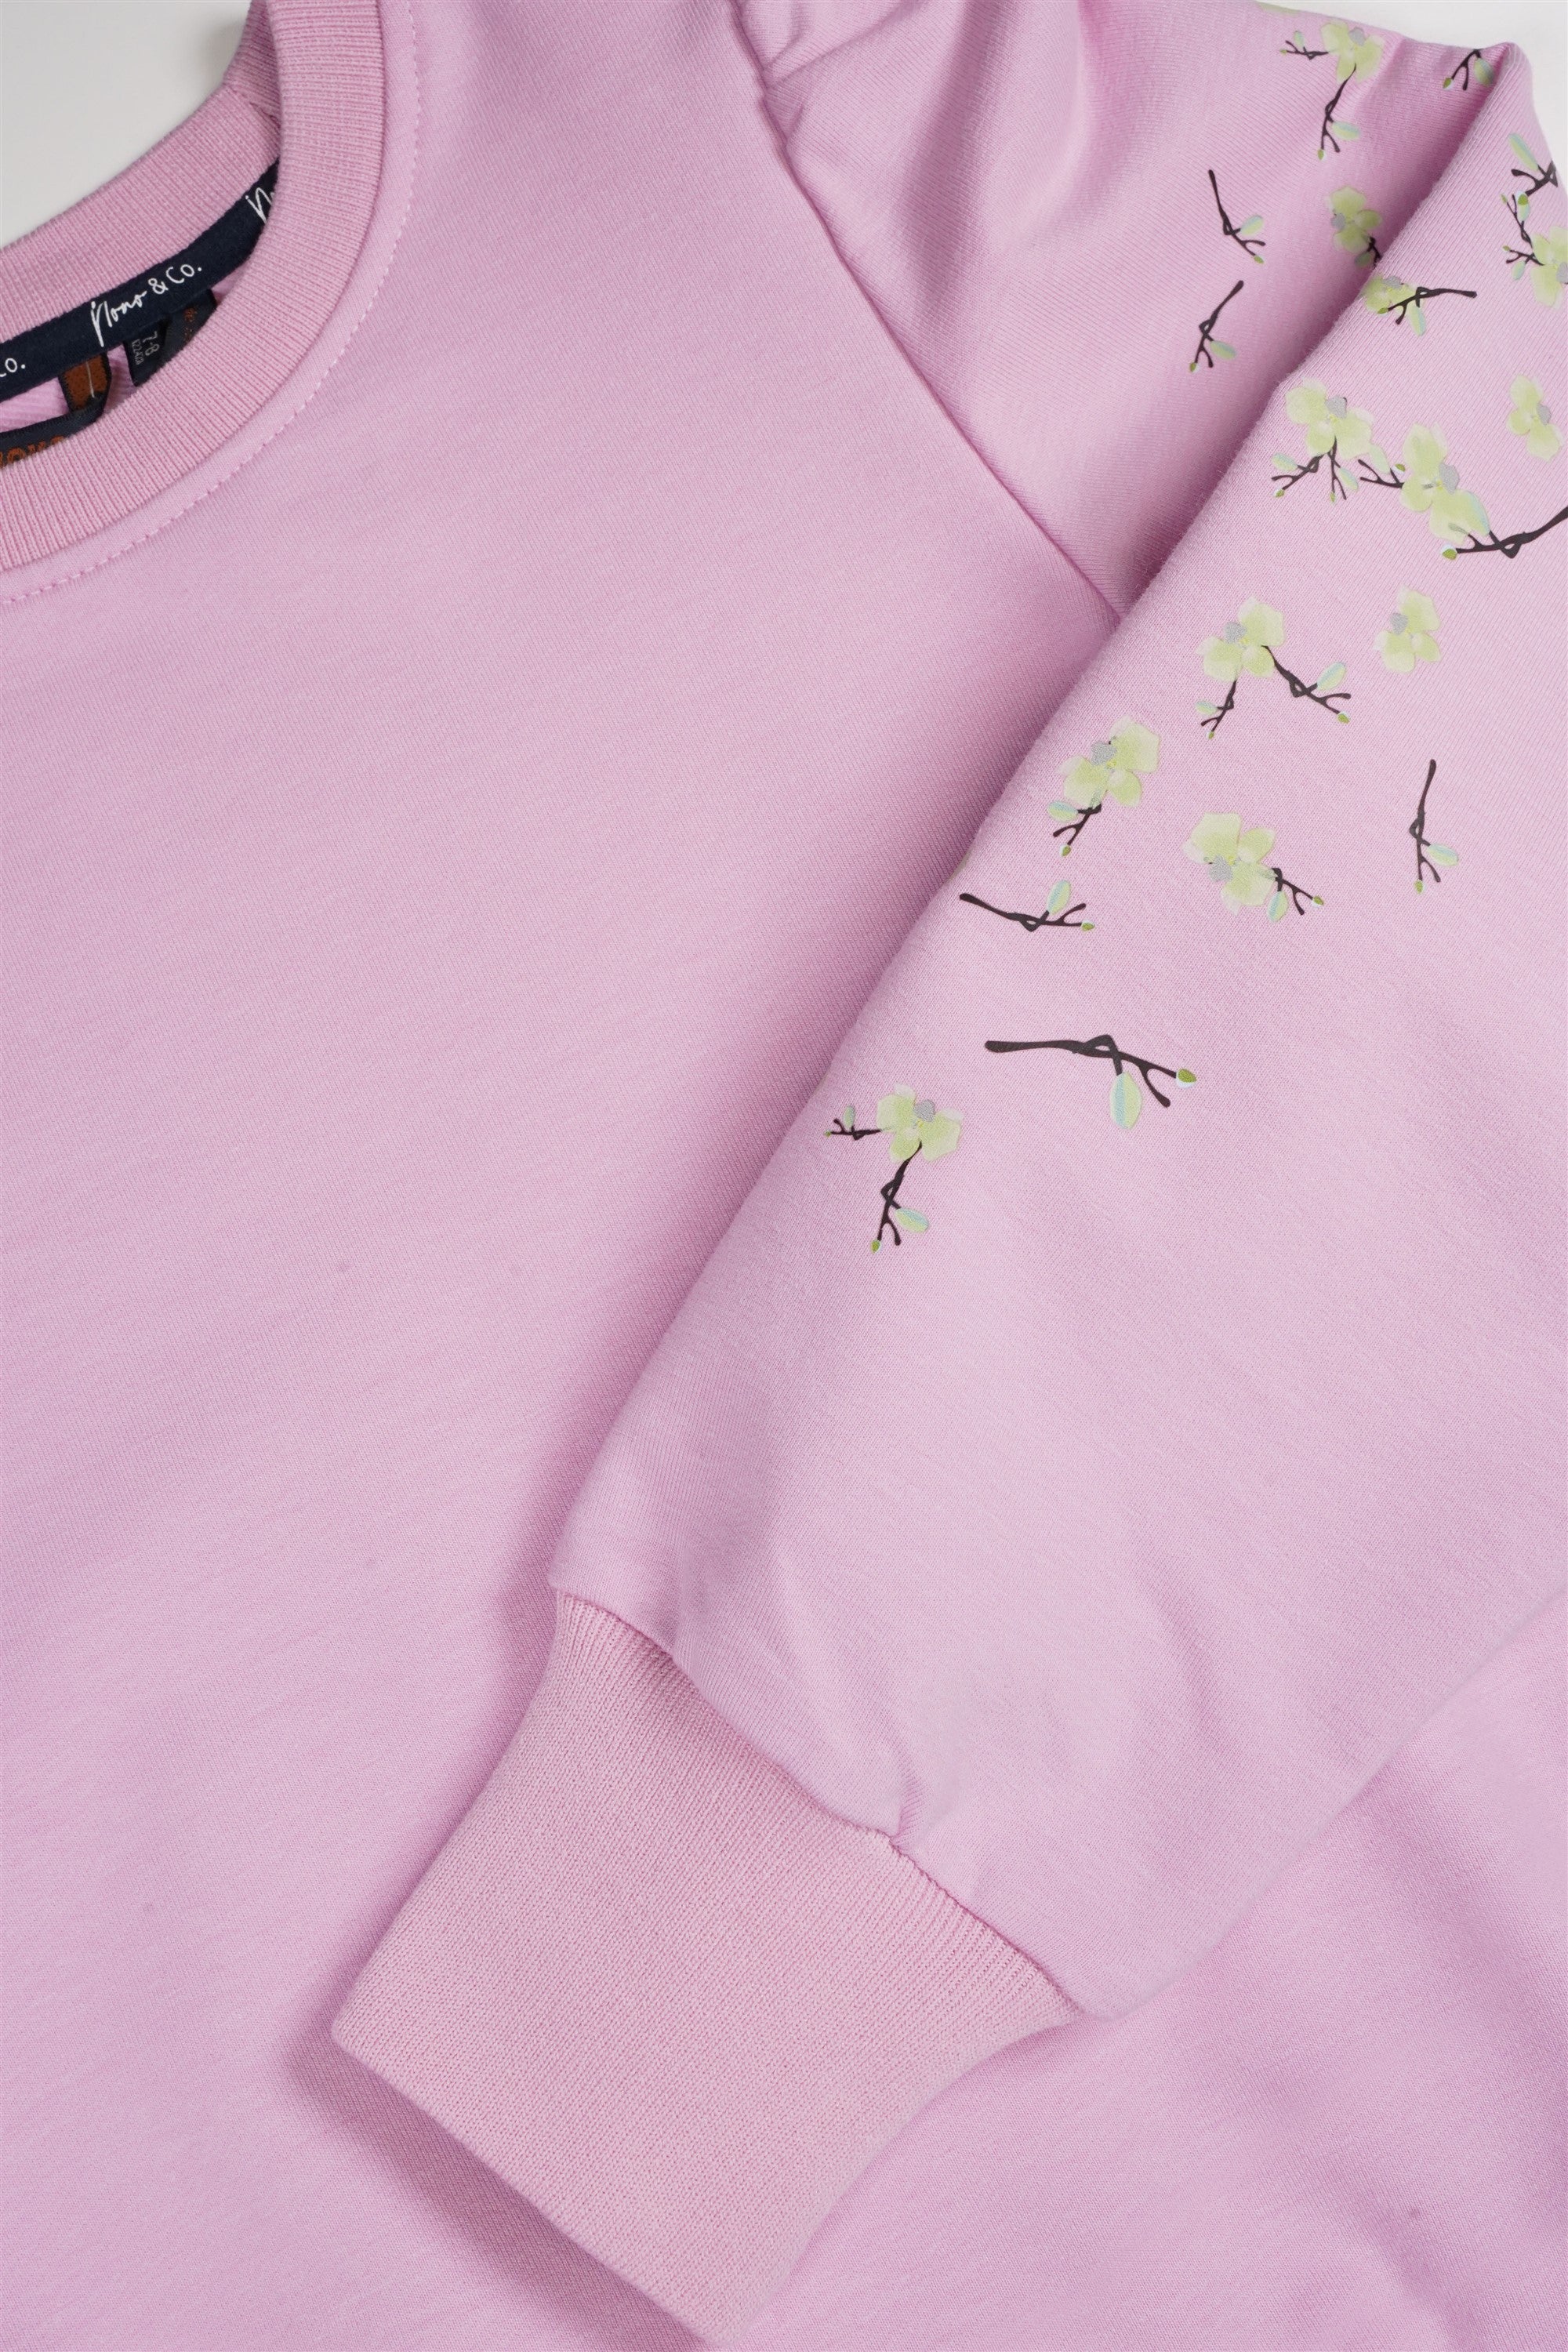 Kulet Sweater Print op Mouw Roze